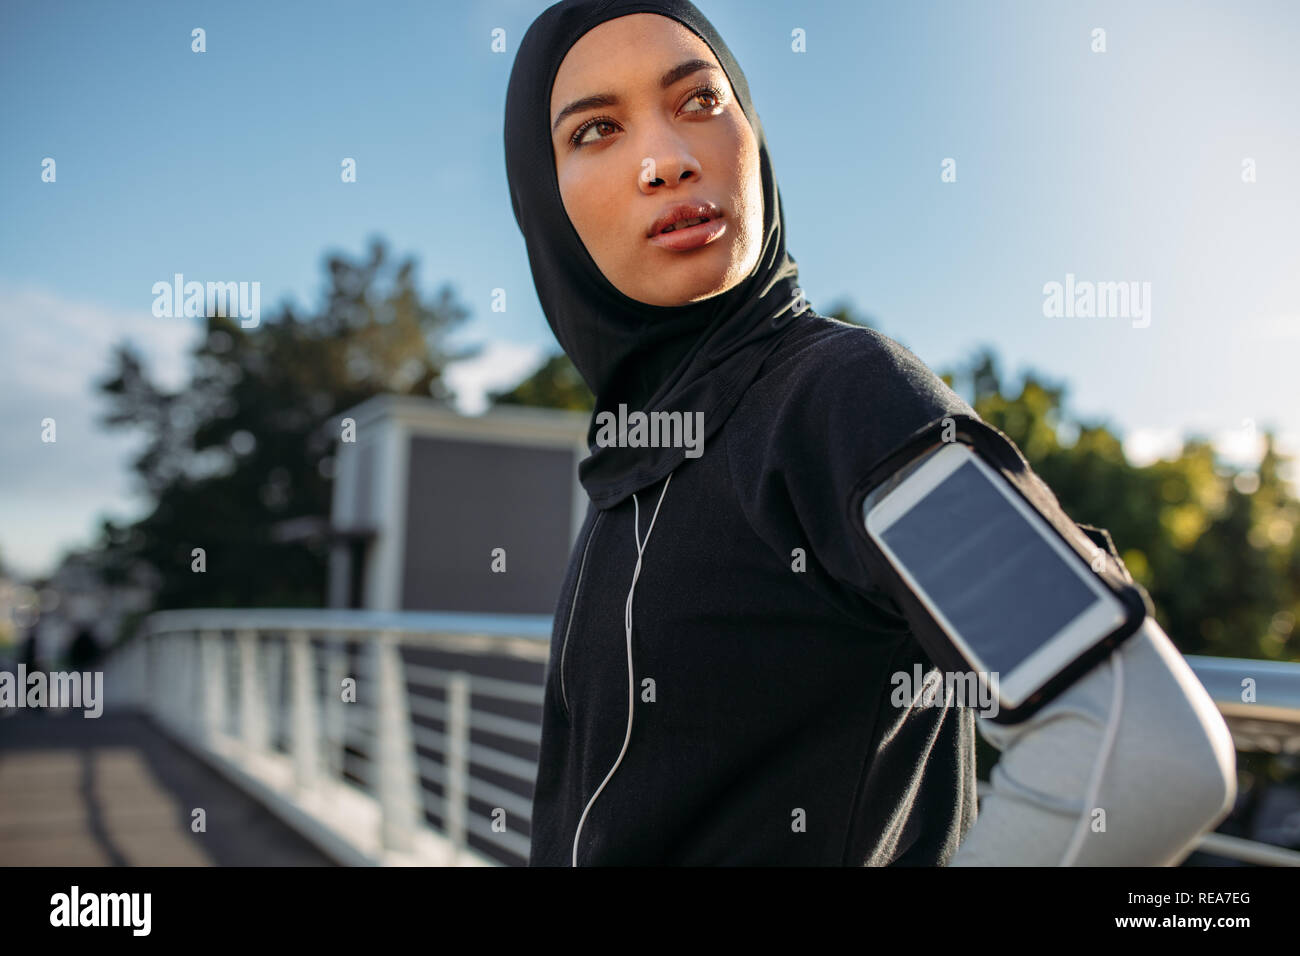 Les jeunes de la sportive en hijab standing outdoors with mobile phone sur son brassard à la route. Les femmes en bonne santé prenant une pause après l'exercice à l'extérieur dans Banque D'Images